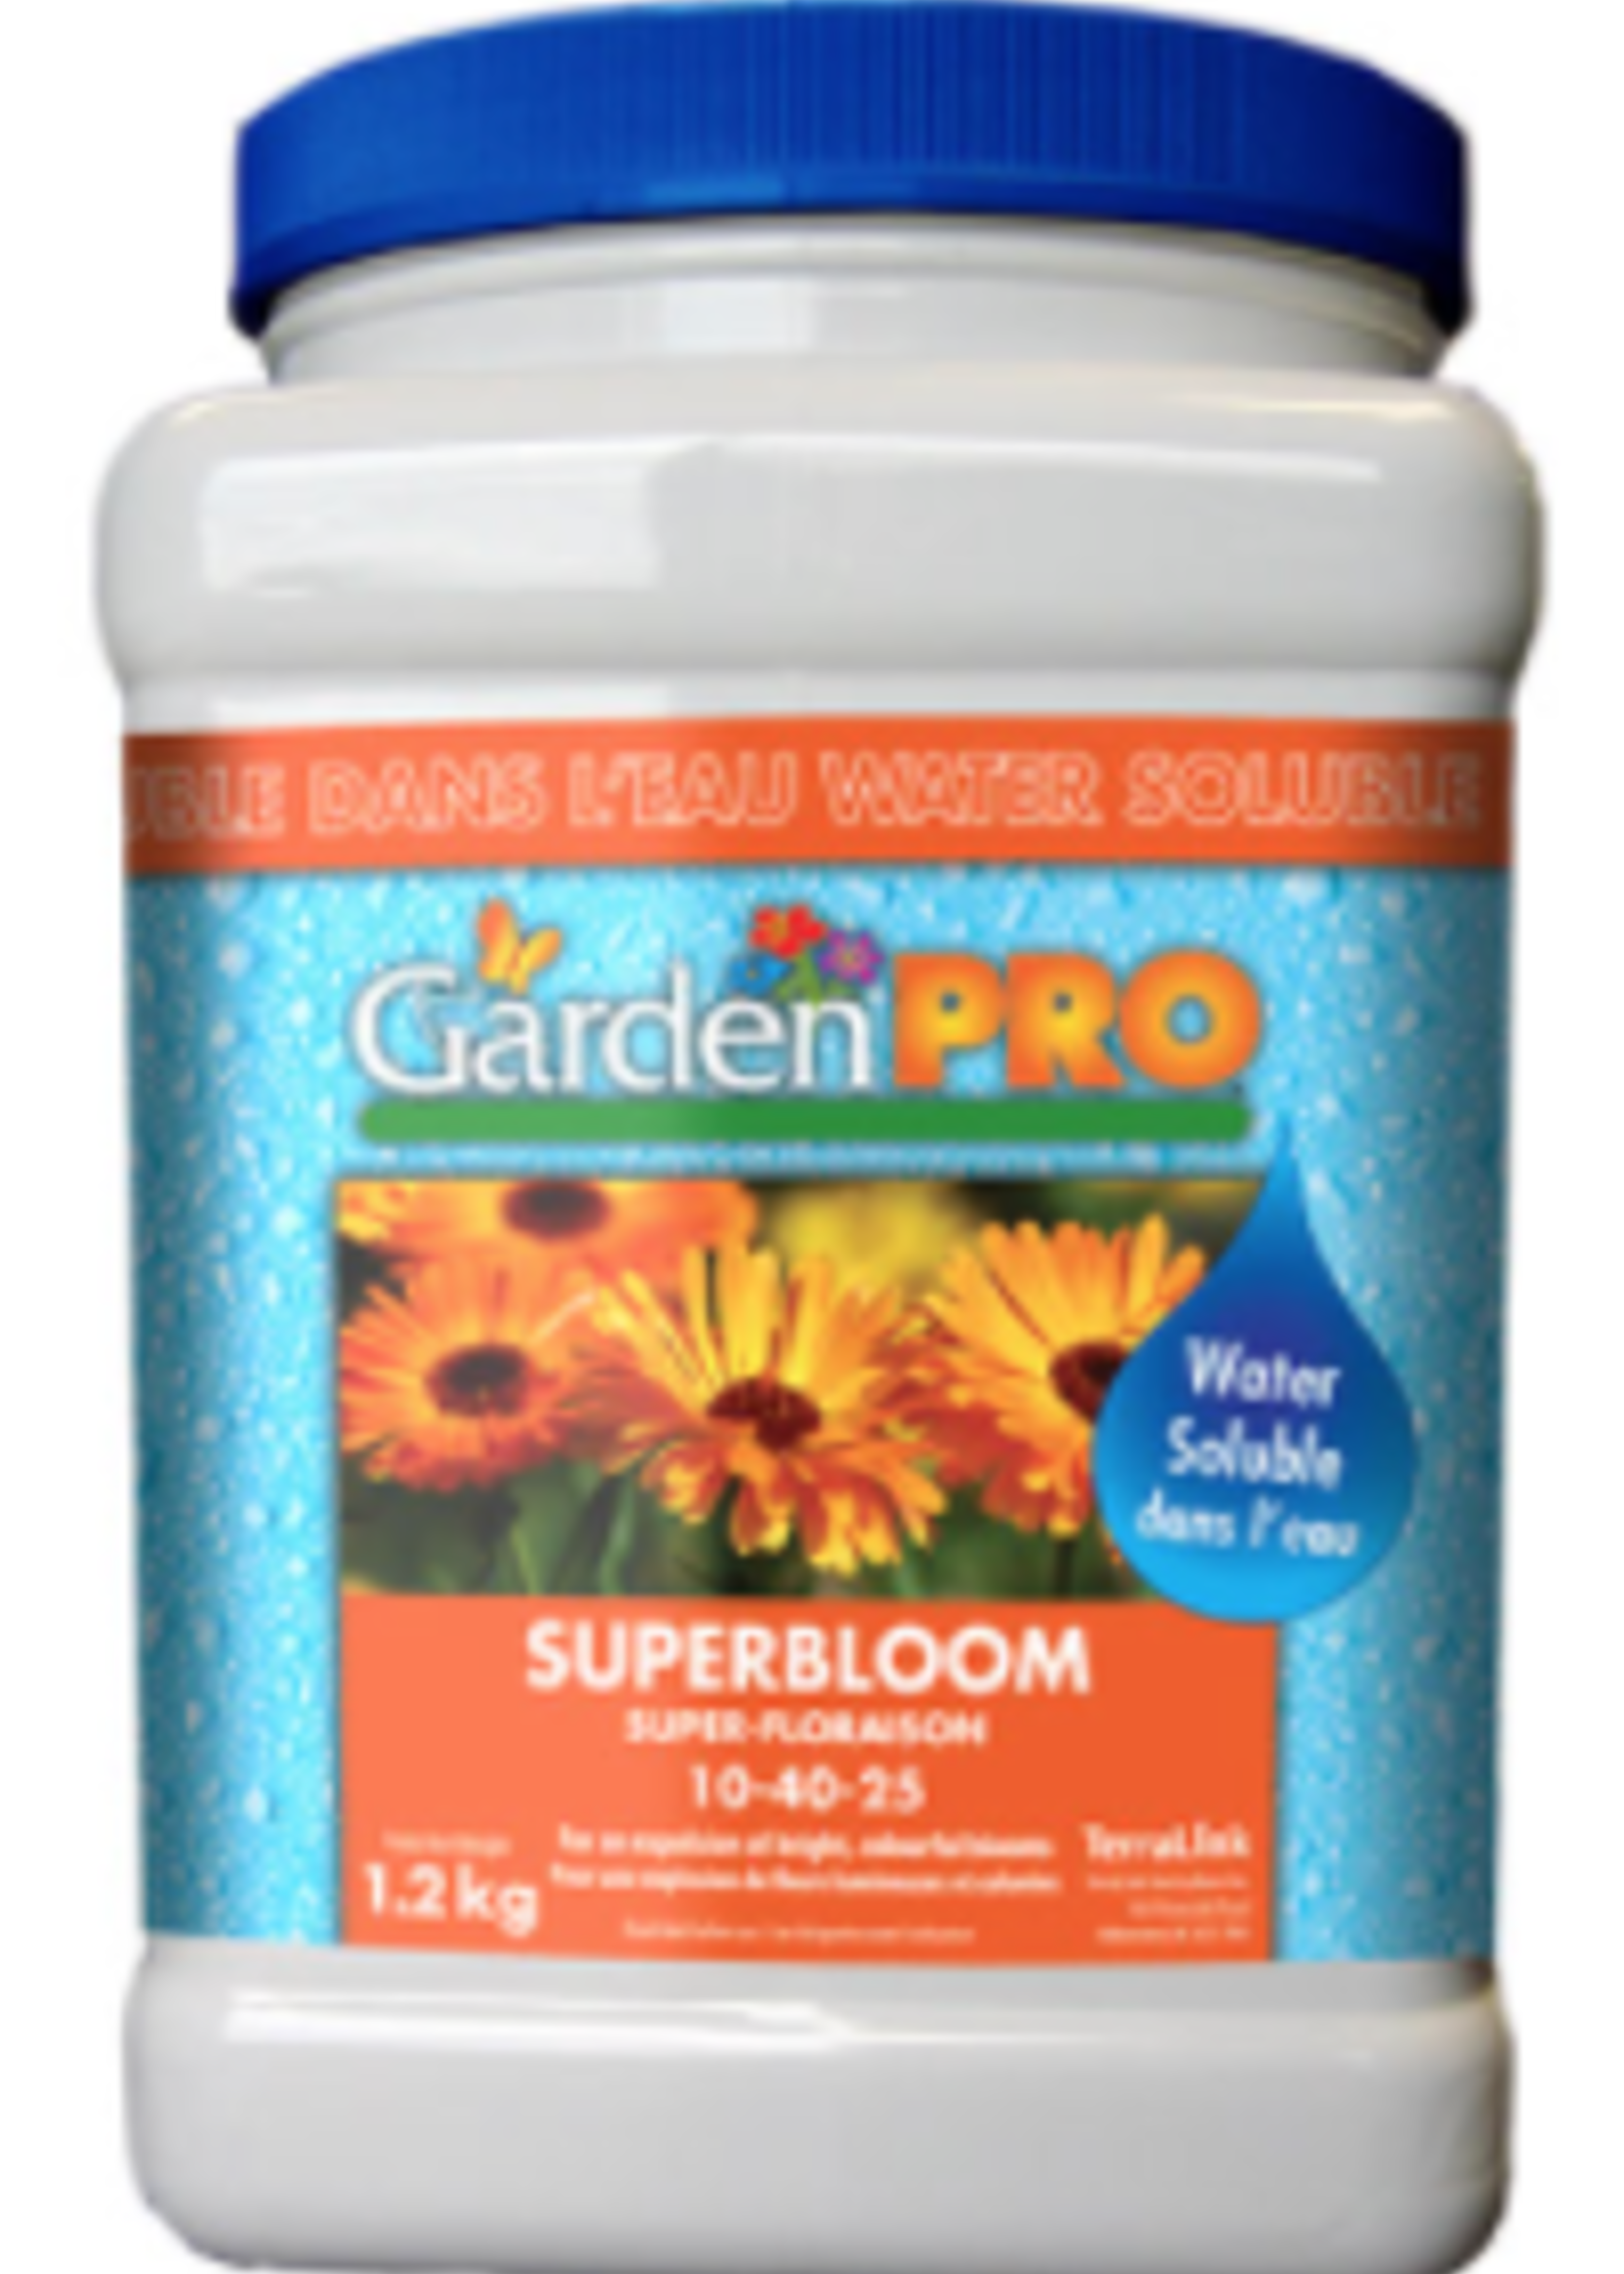 Garden Pro Super Bloom 10-40-25, 1.2kg